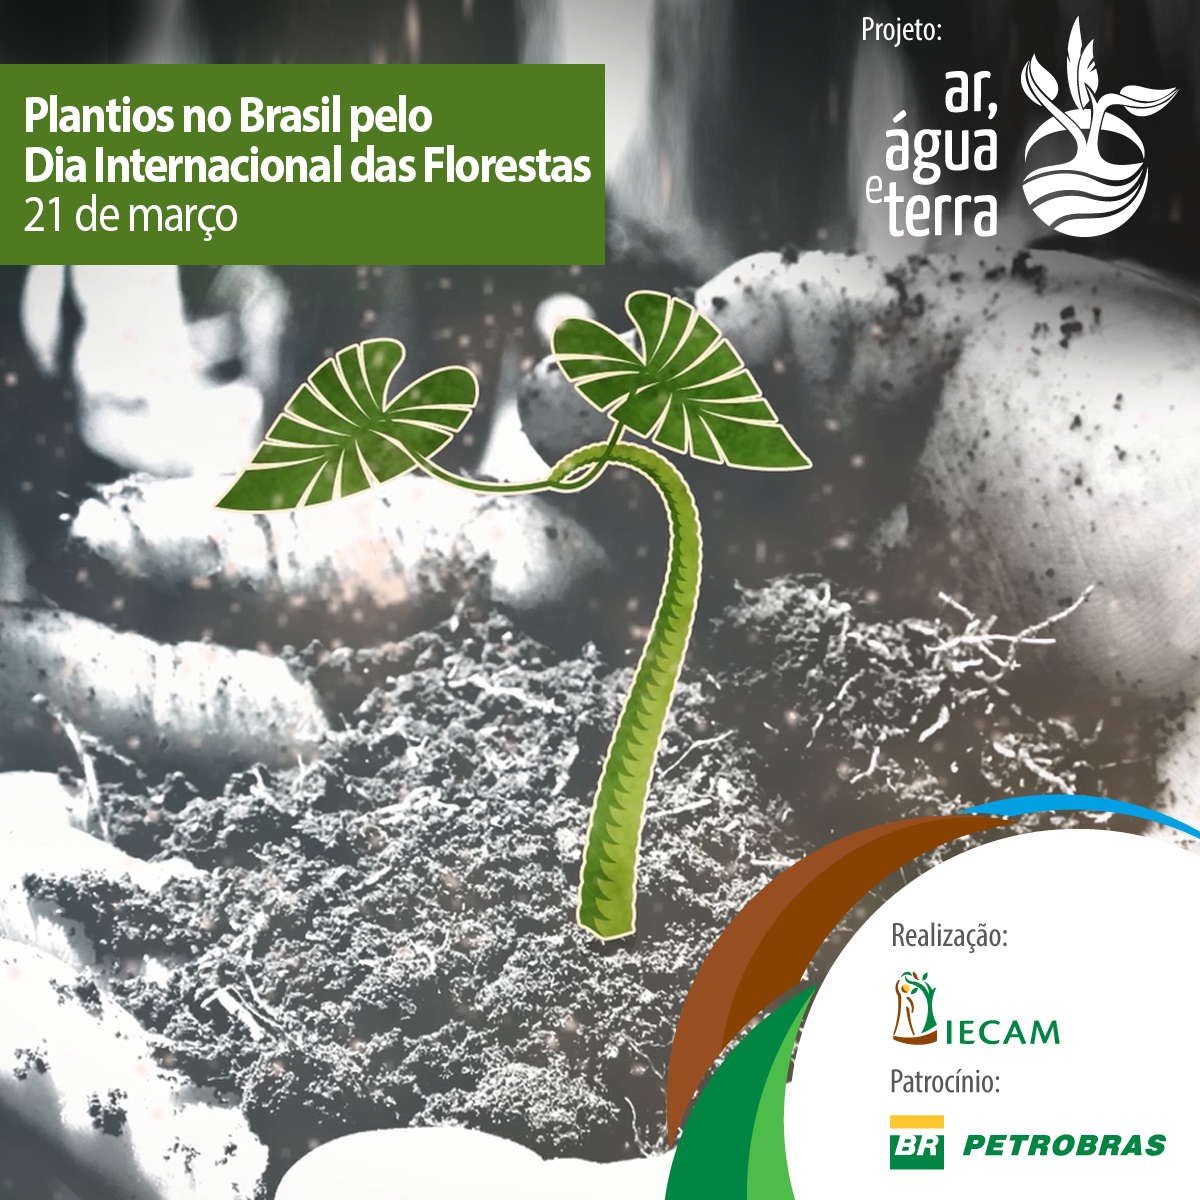 Plantios no Brasil pelo Dia Internacional das Florestas